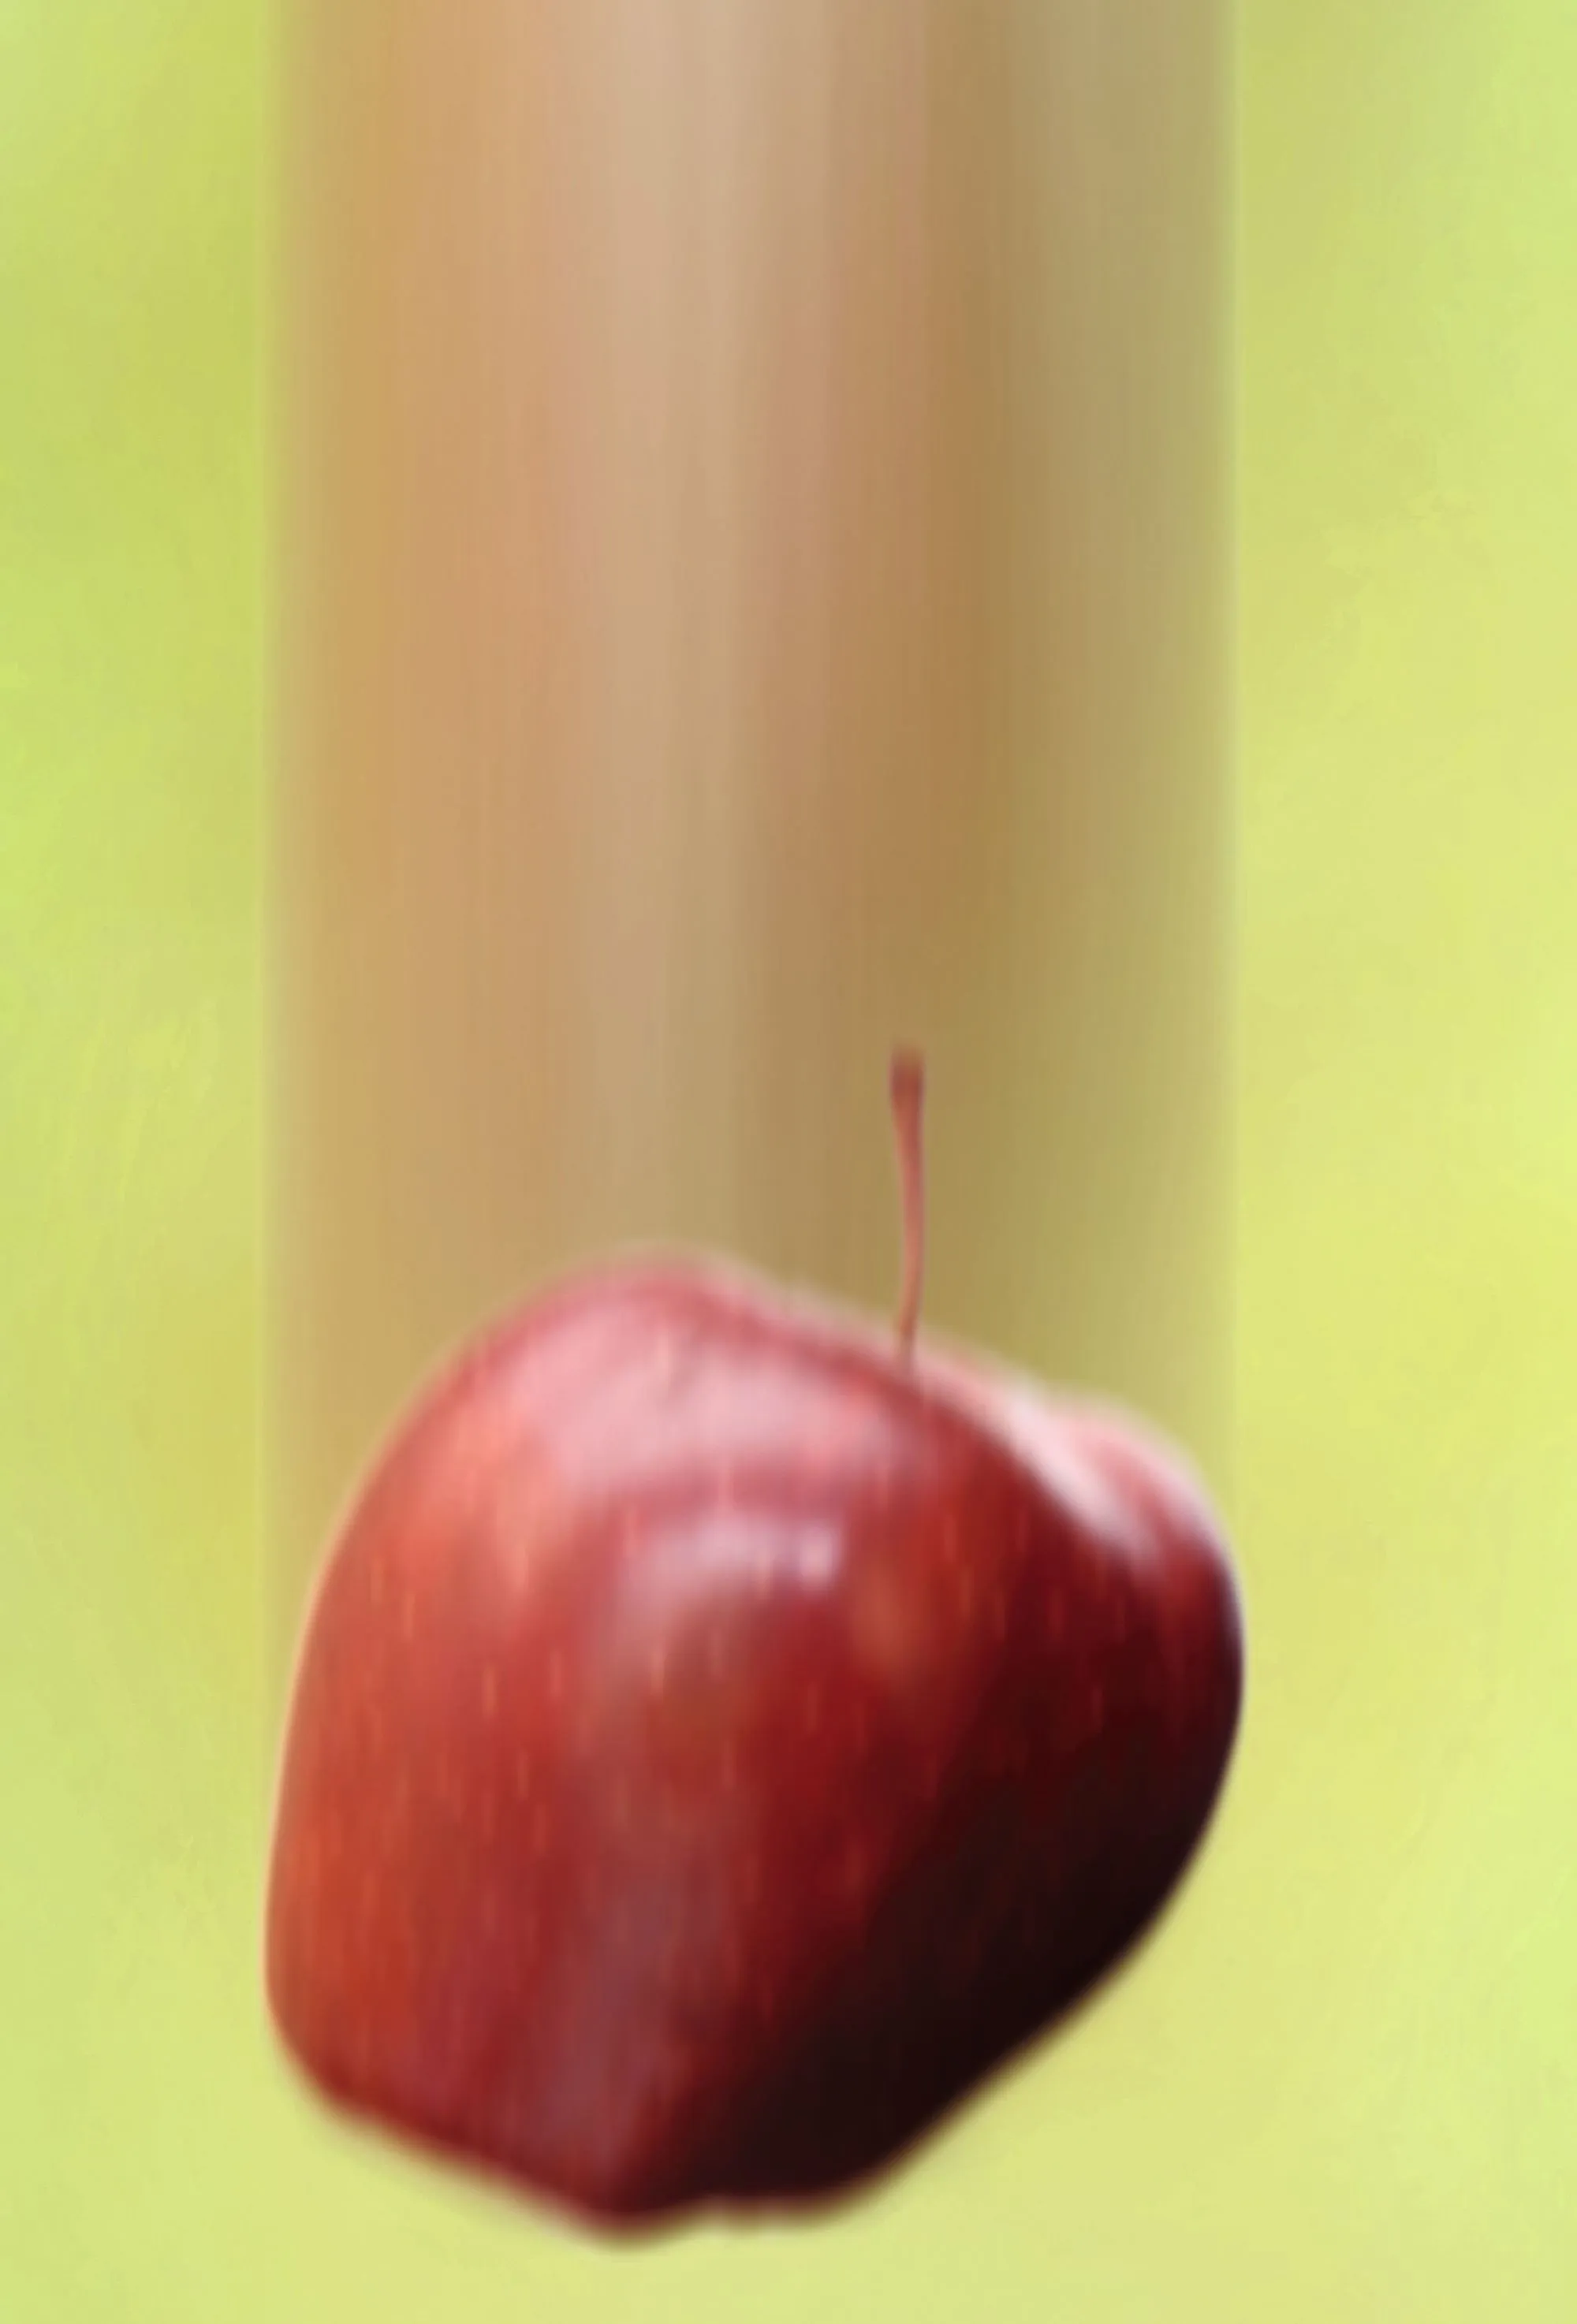 Le champ de pesanteur : chute d'une pomme